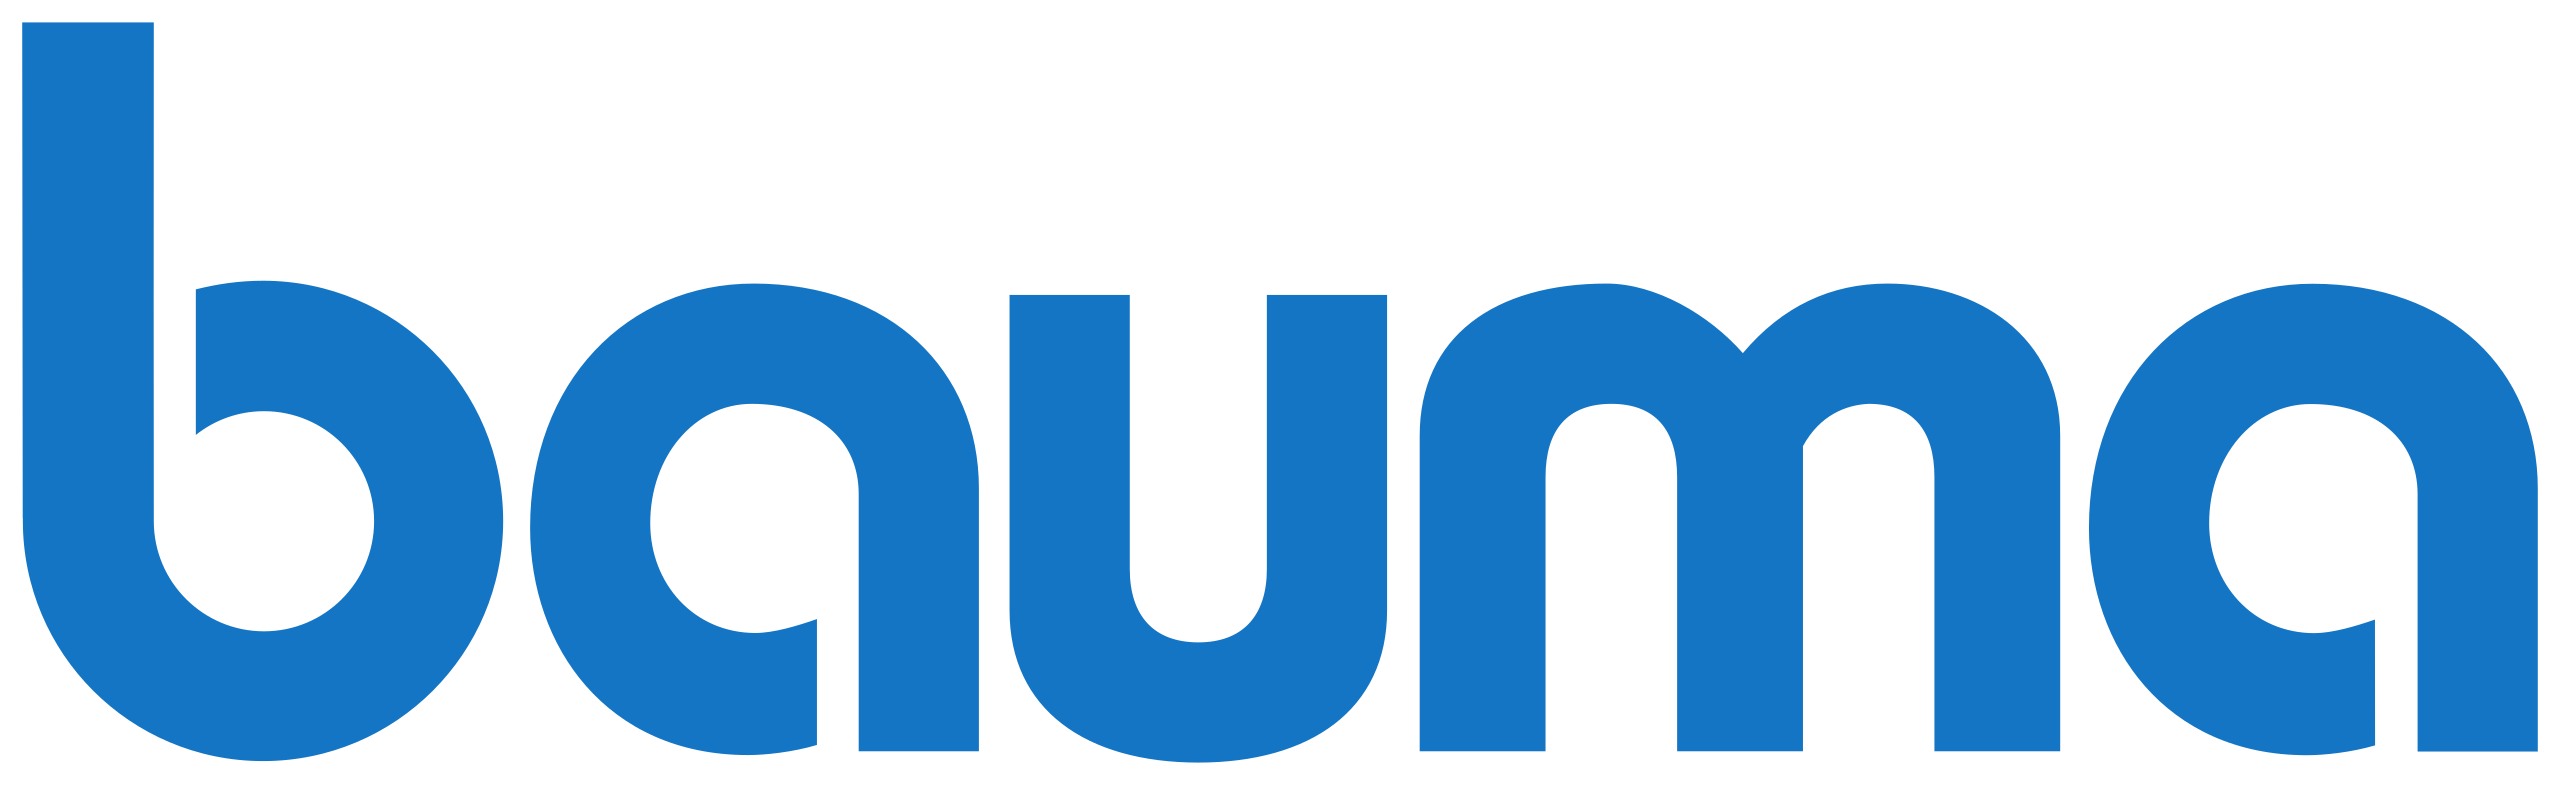 Bauma_(Messe)_logo.svg